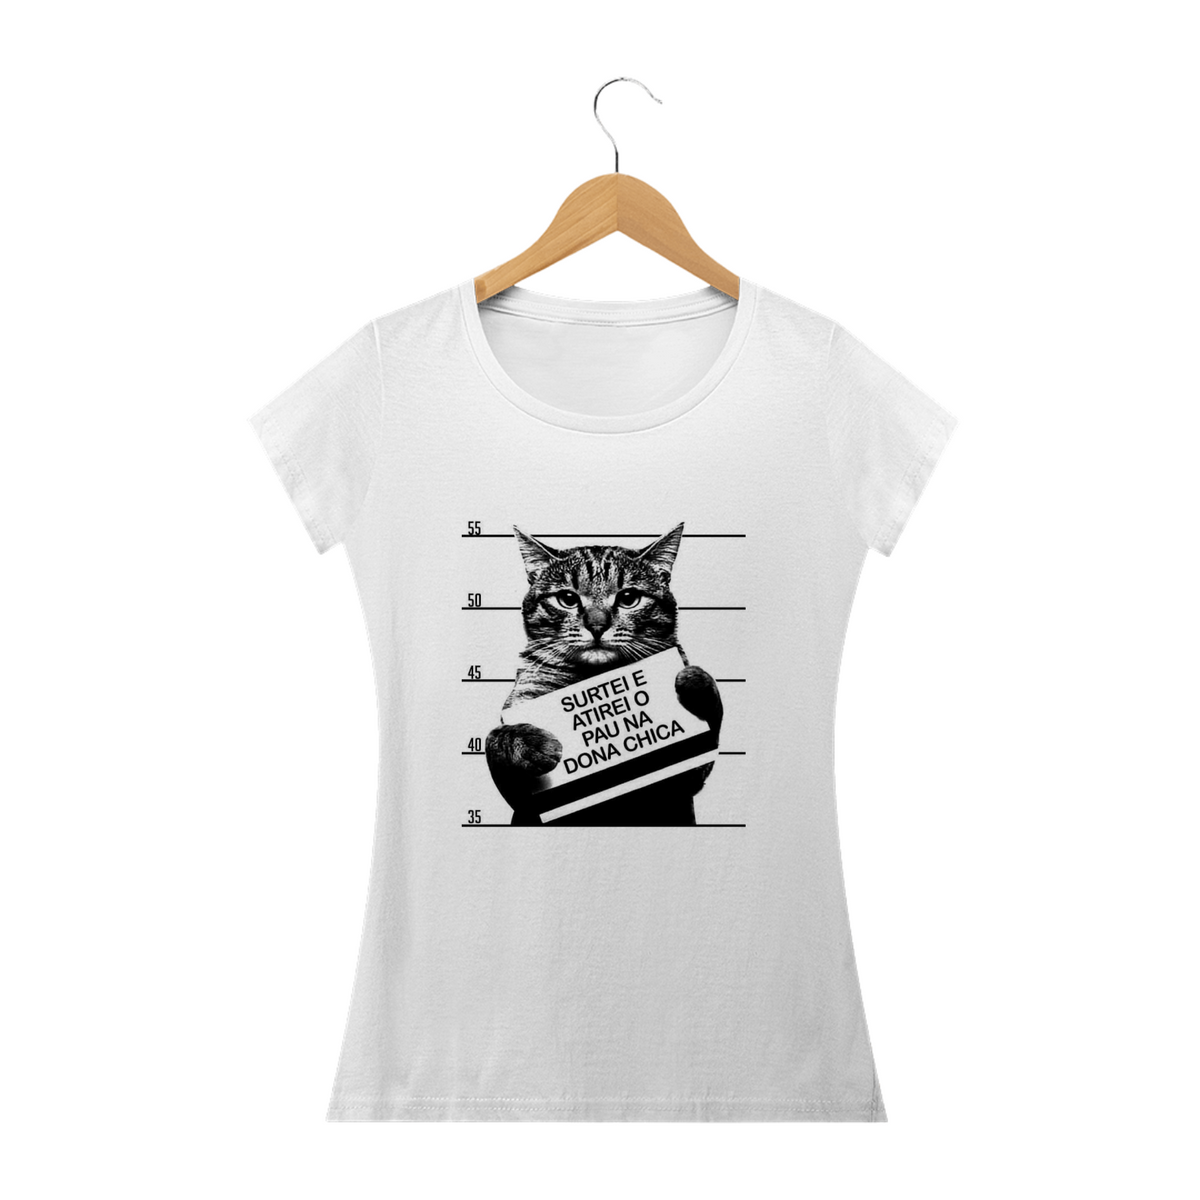 Nome do produto: Camiseta Feminina Cats - Dona Chica